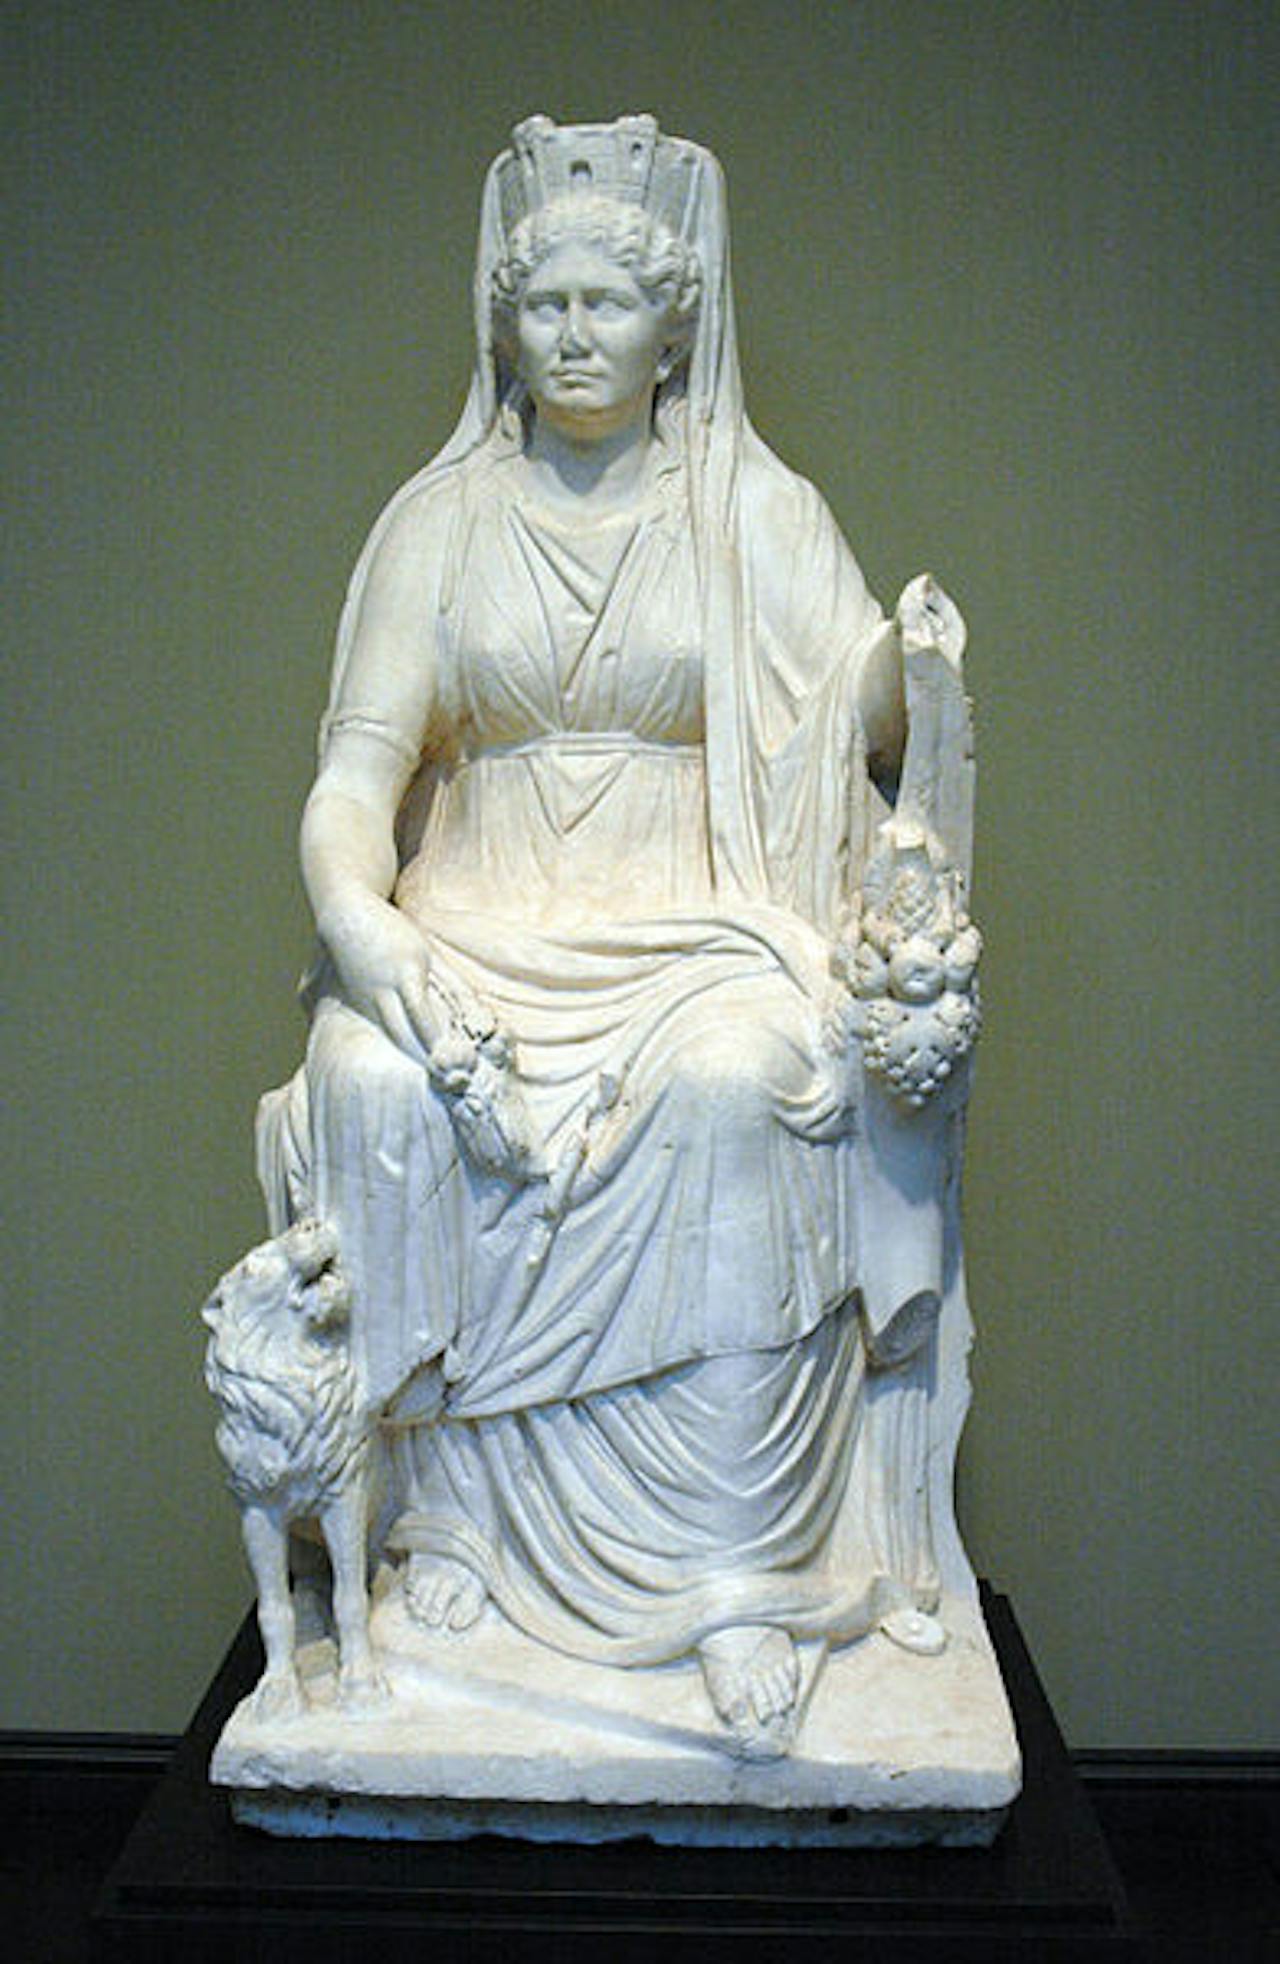 Een beeld van Cybele op haar troon, met aan haar zijde een leeuwtje. Op haar hoofd draagt ze een kroon in de vorm van een stadsmuur.